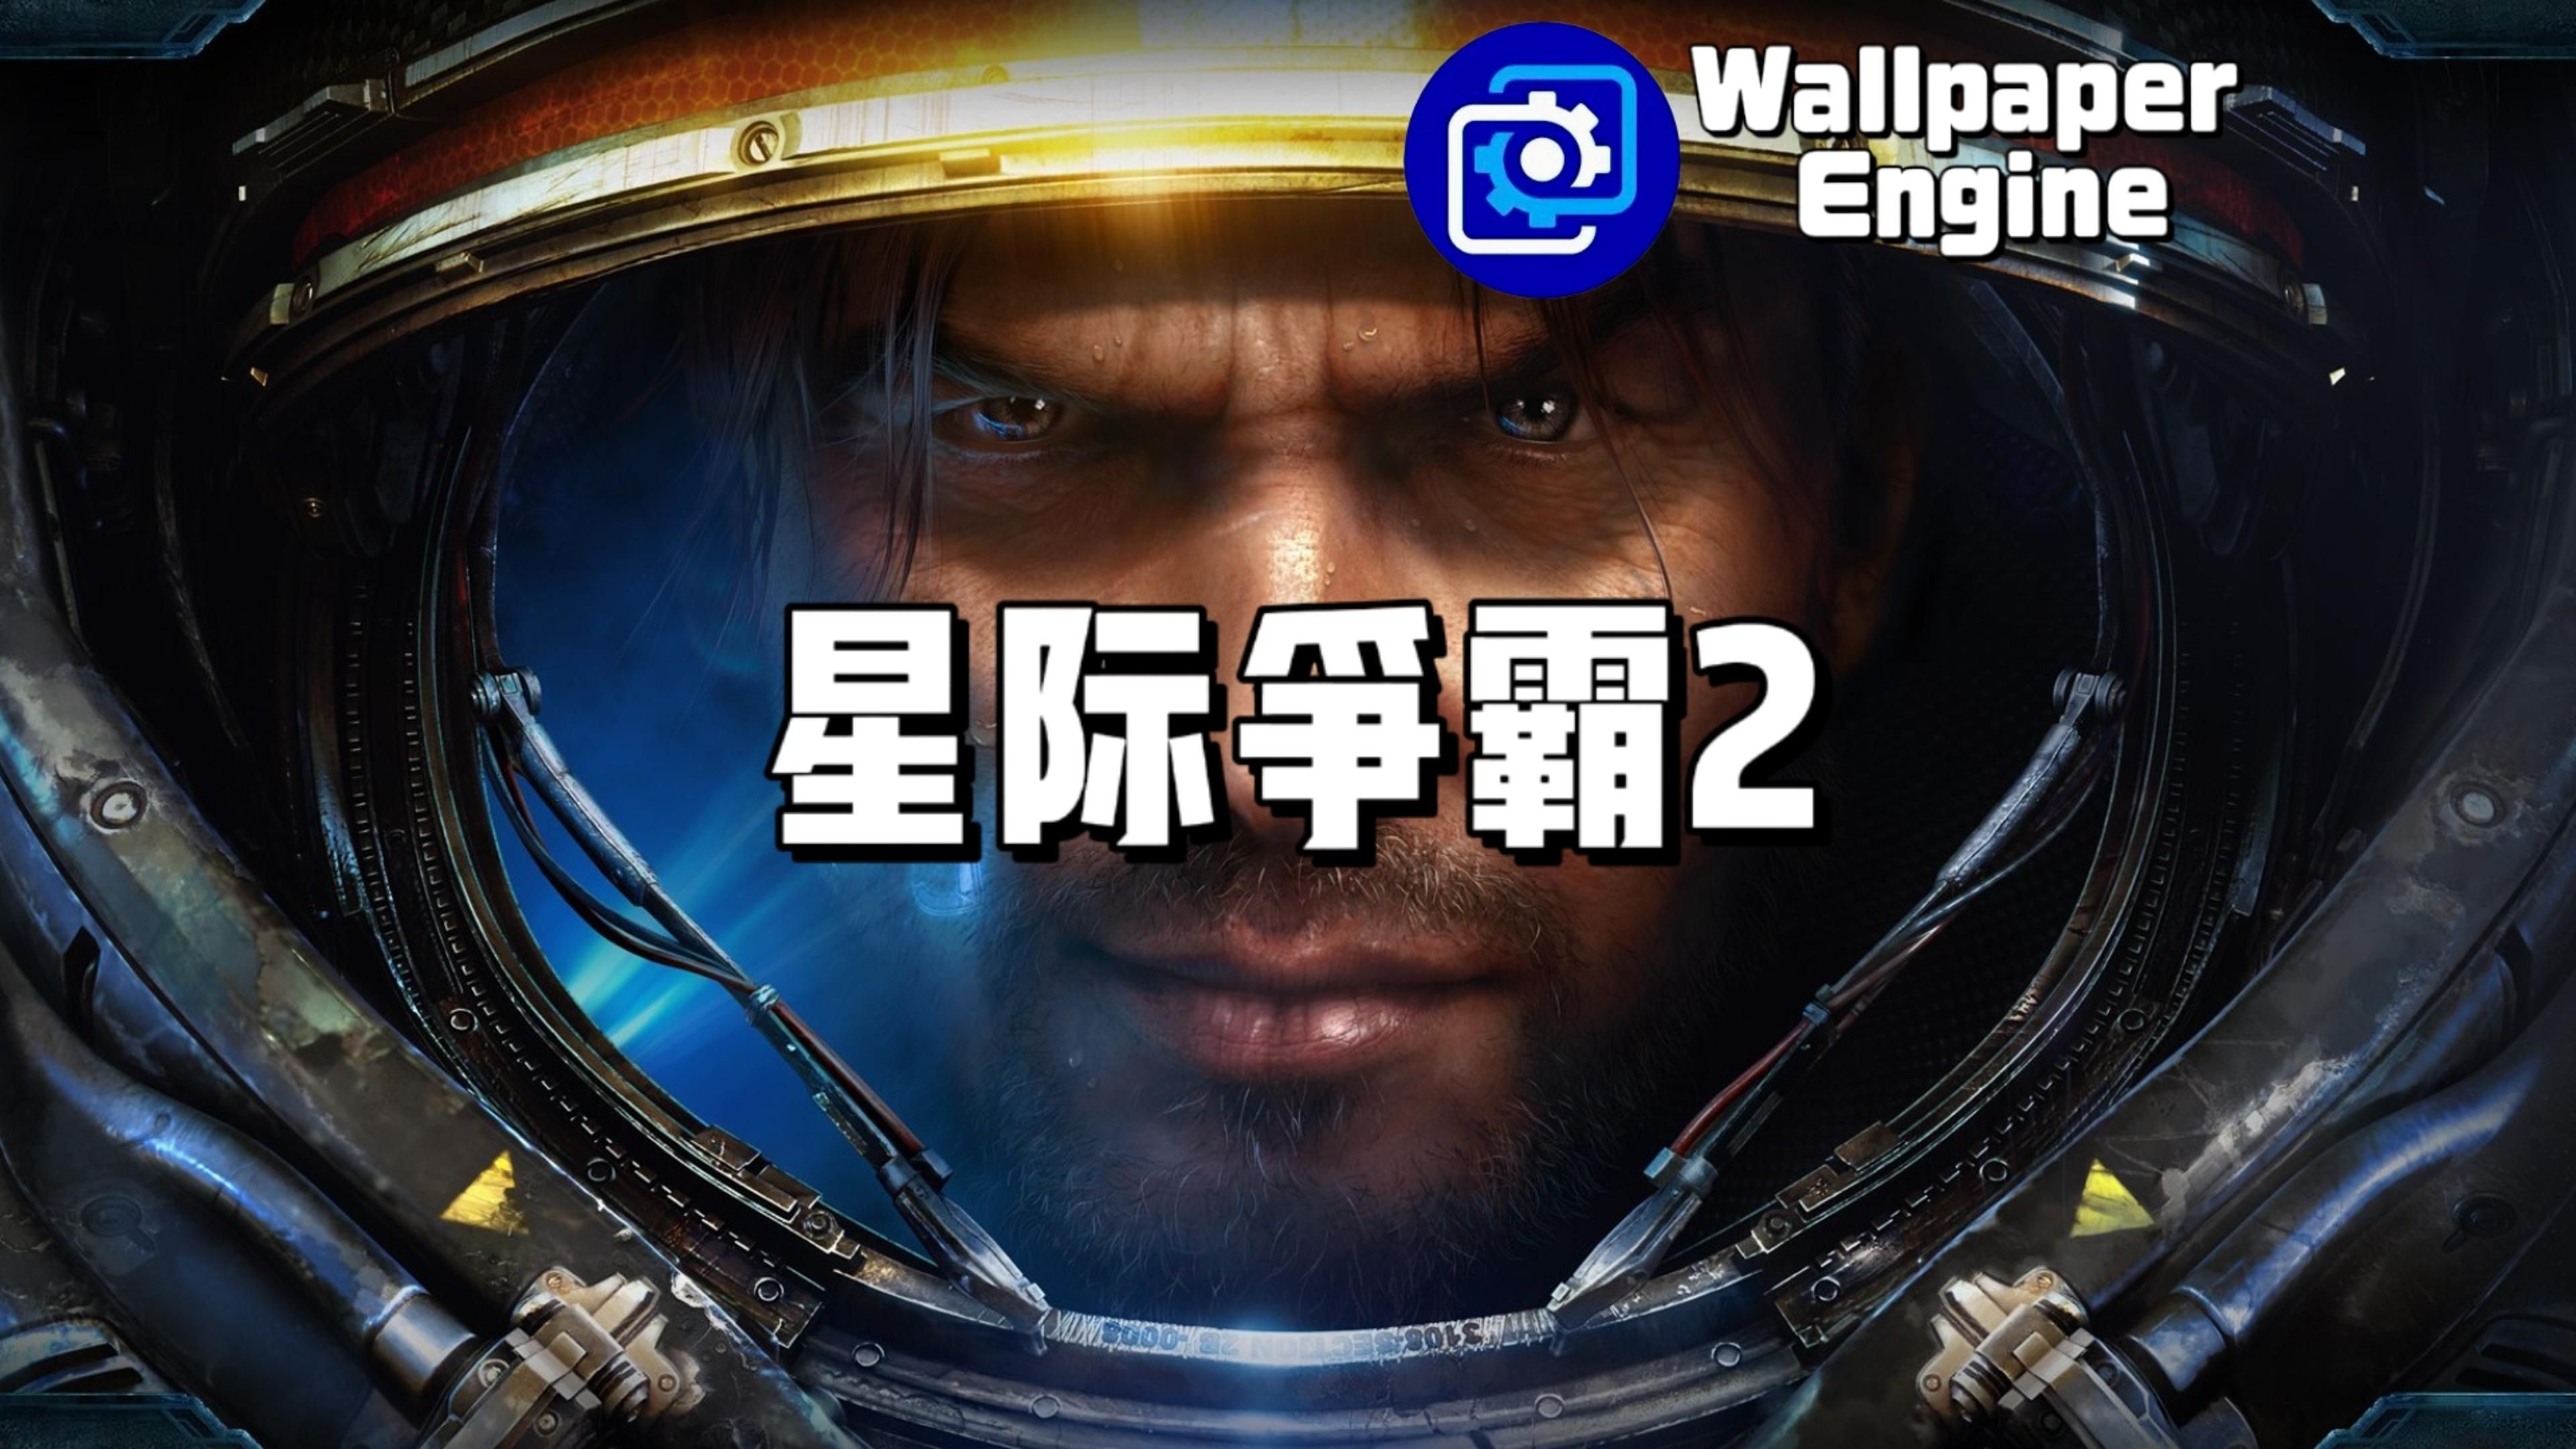 【wallpaper engine】壁纸推荐 星际争霸2